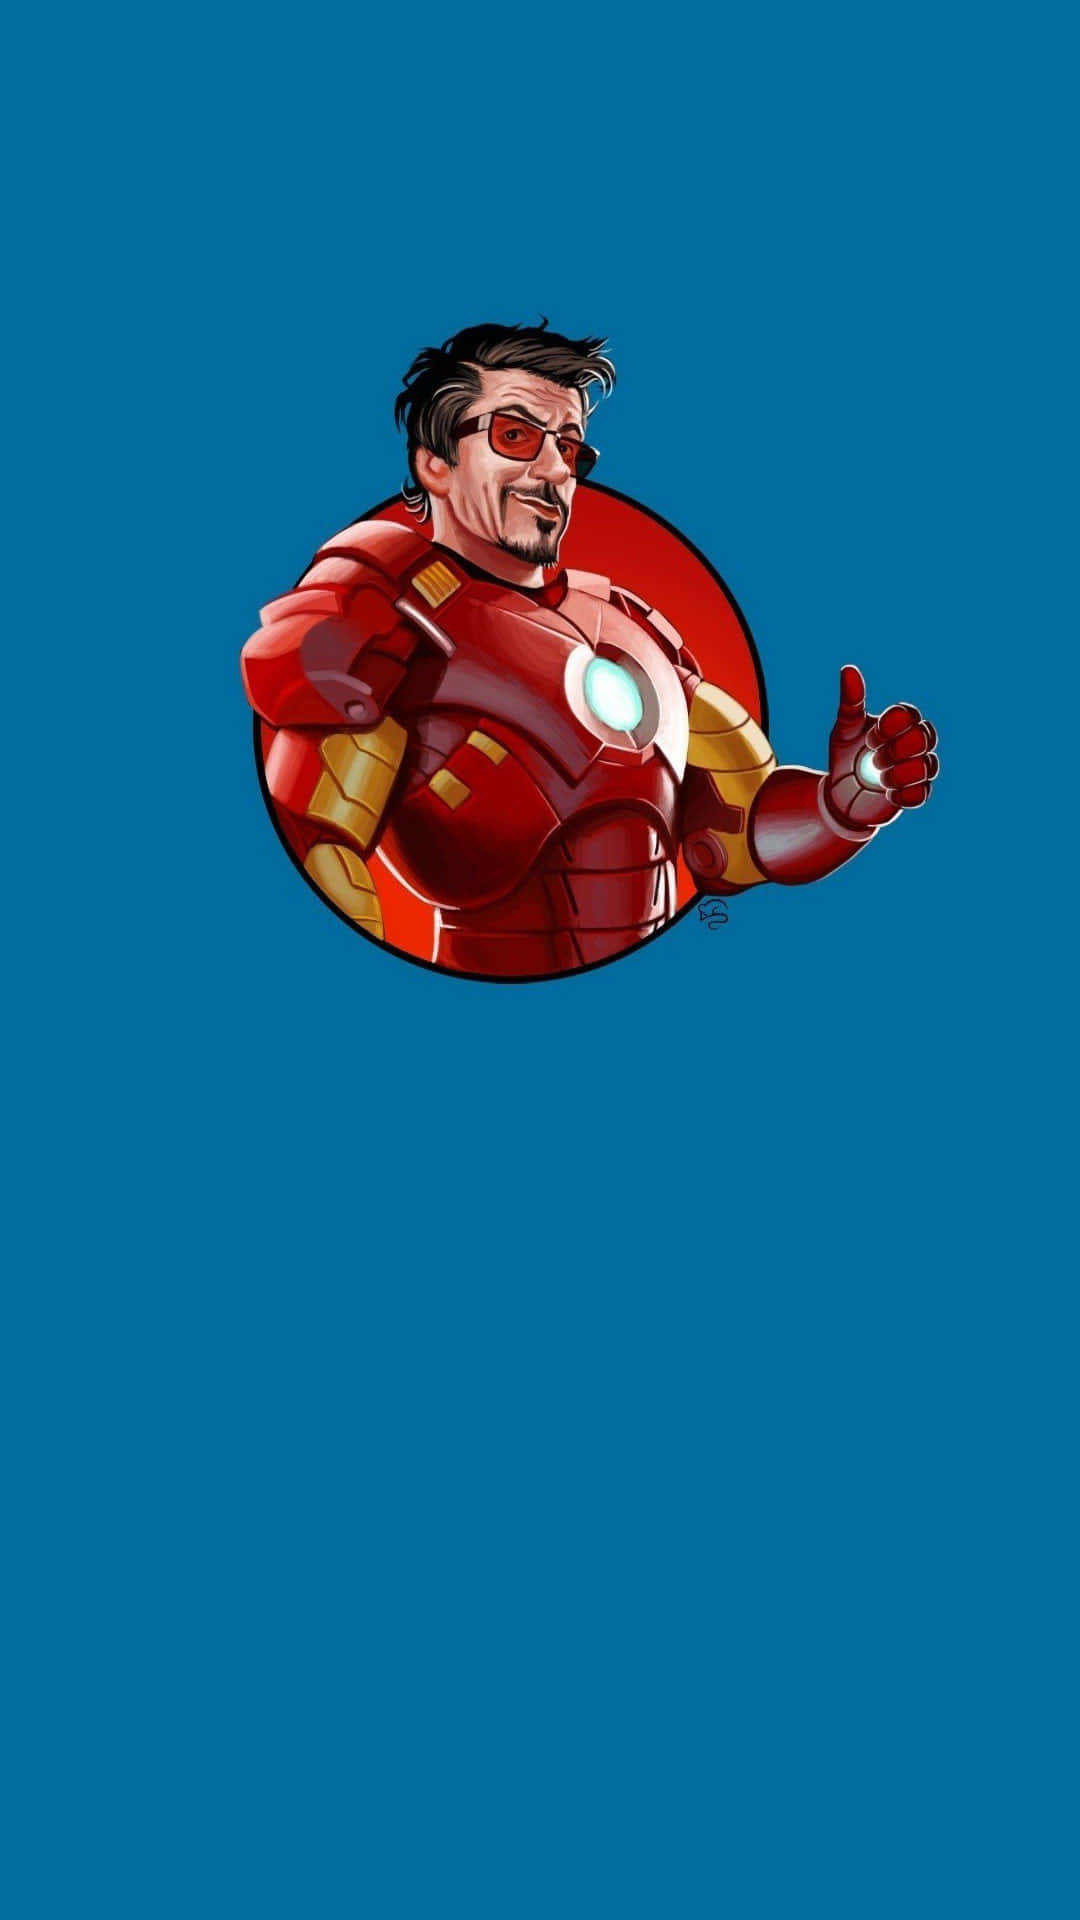 Unelegante Iphone Inspirado En Superhéroes, De Vanguardia, Para El Moderno Fanático De Iron Man. Fondo de pantalla